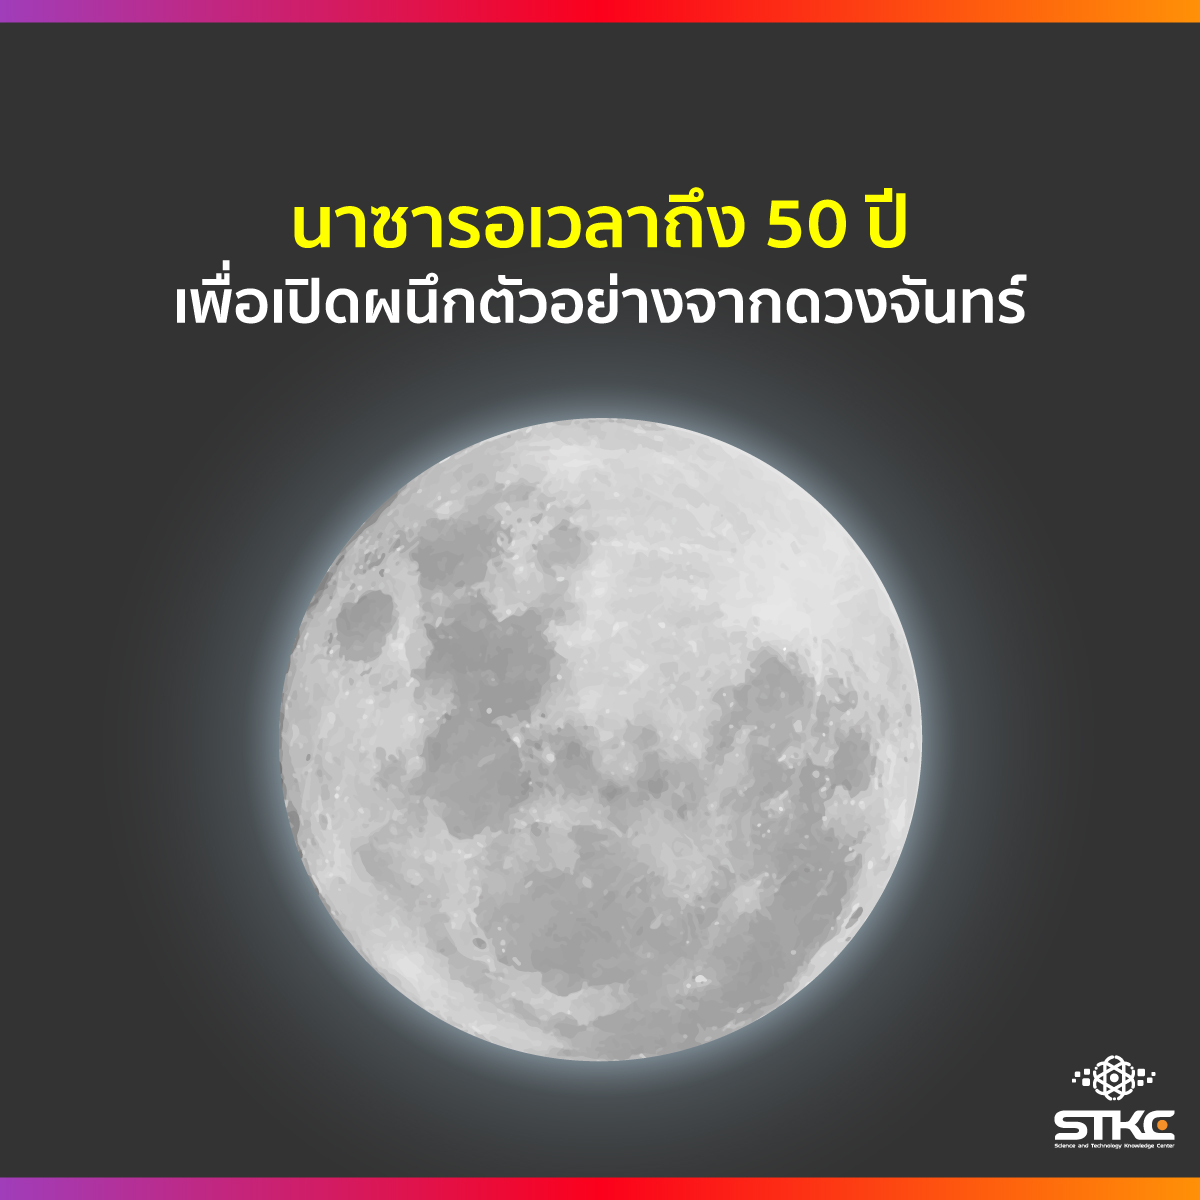 นาซารอเวลาถึง 50 ปี เพื่อเปิดผนึกตัวอย่างจากดวงจันทร์